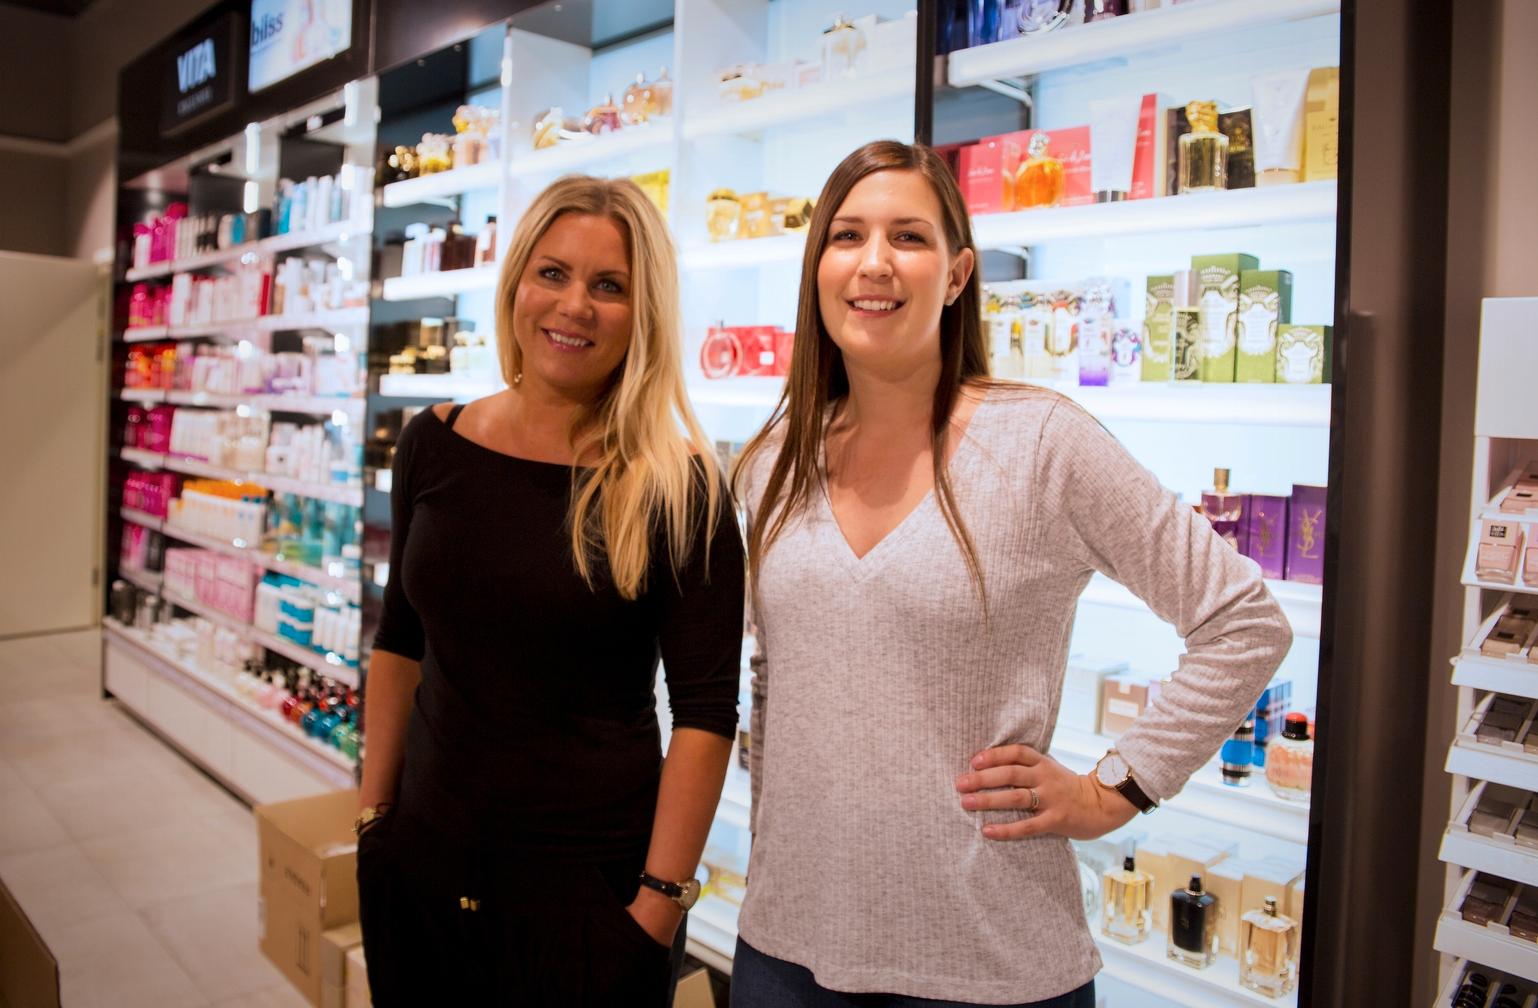 Regionsjef i VITA Exclusive, Cecilie Asker Løvholm, og butikksjef Tina Lovise Haugen (26) i den nye butikken på Sørlandssenteret. Foto: Vegard Nekstad.